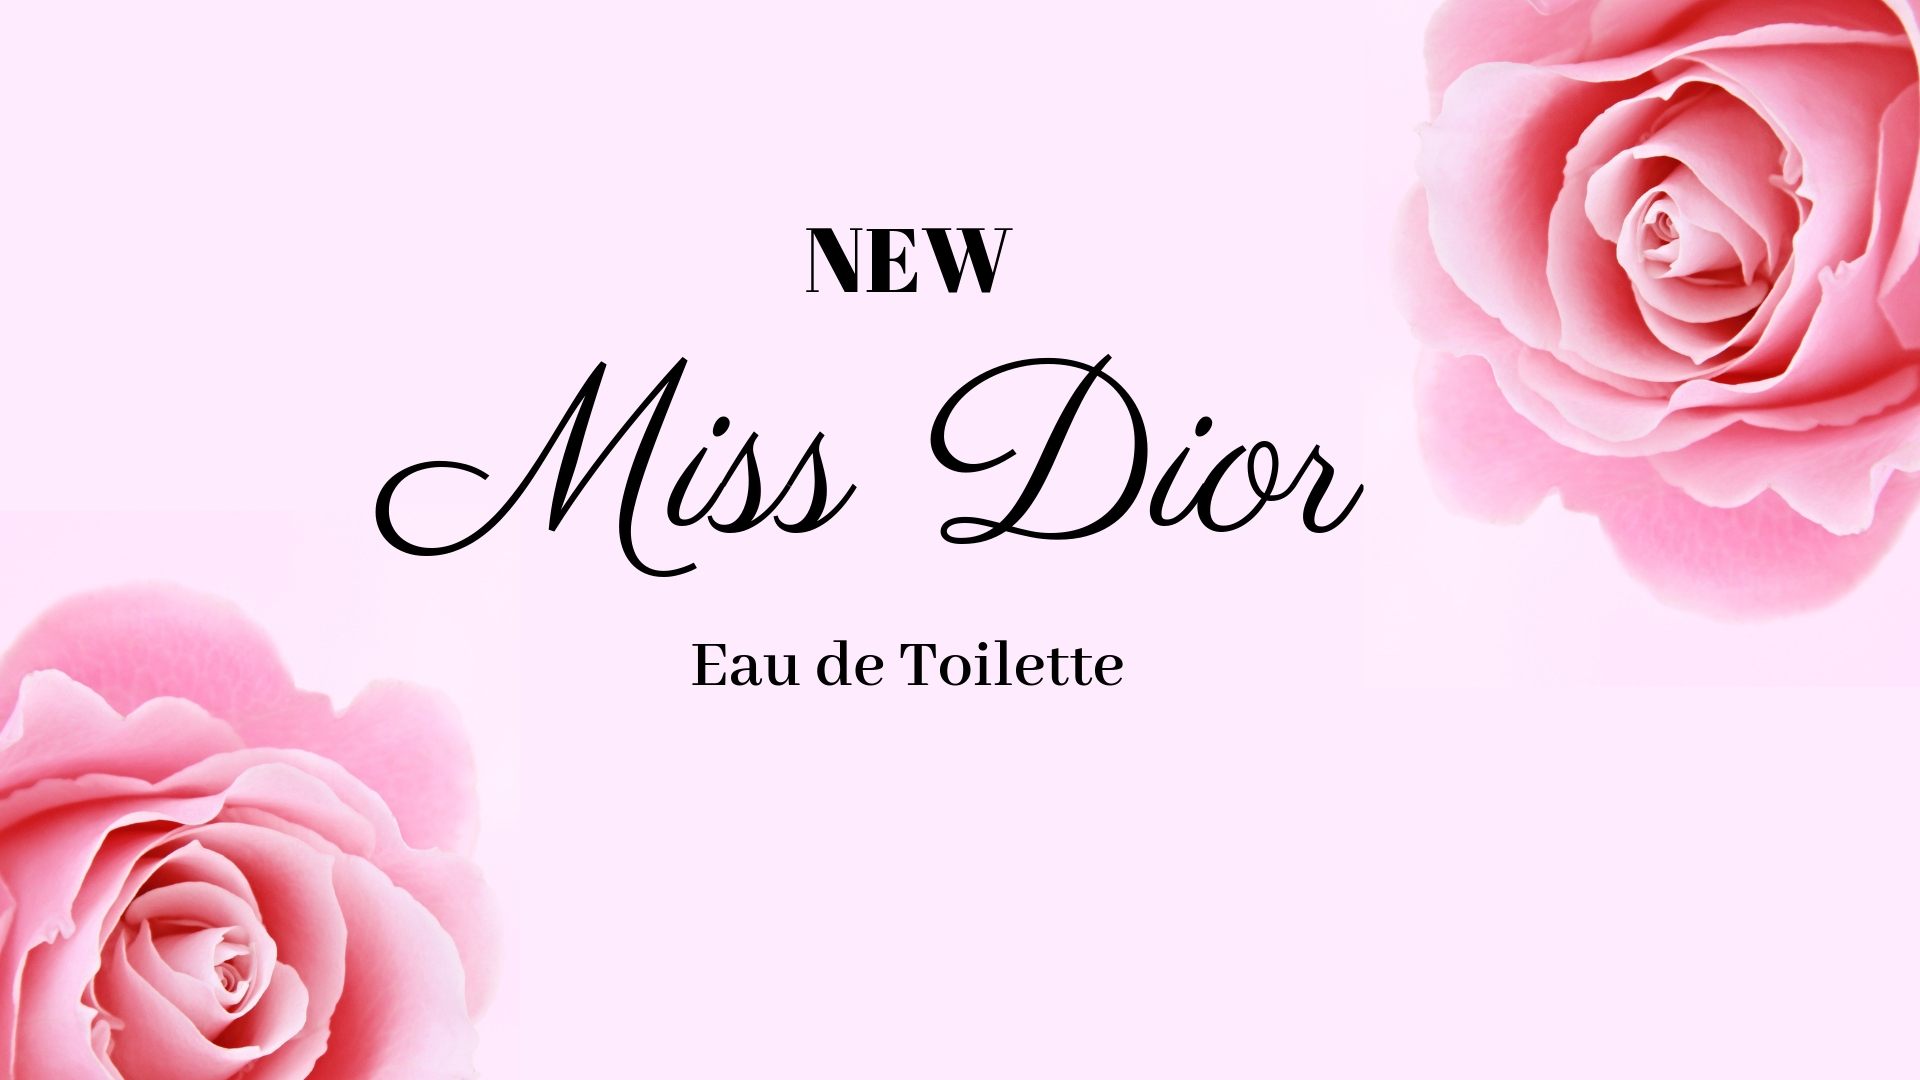 dior miss dior 2019